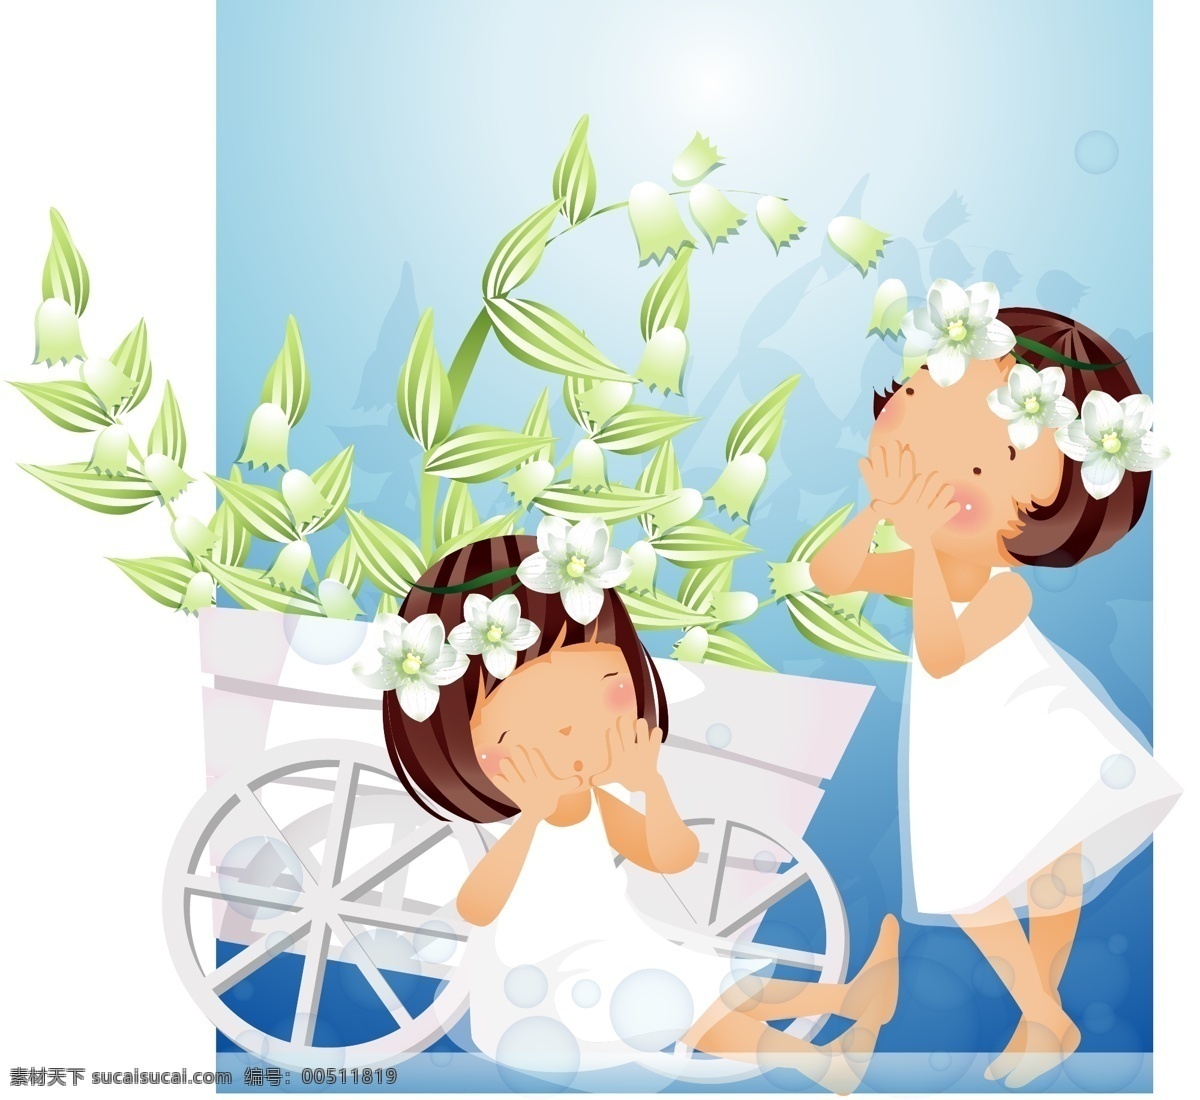 白色 花 主题 iclickart 四 赛季 韩国 可爱 女孩 相册 韩国矢量素材 花环 汽车 夏季 叶 物质 载体